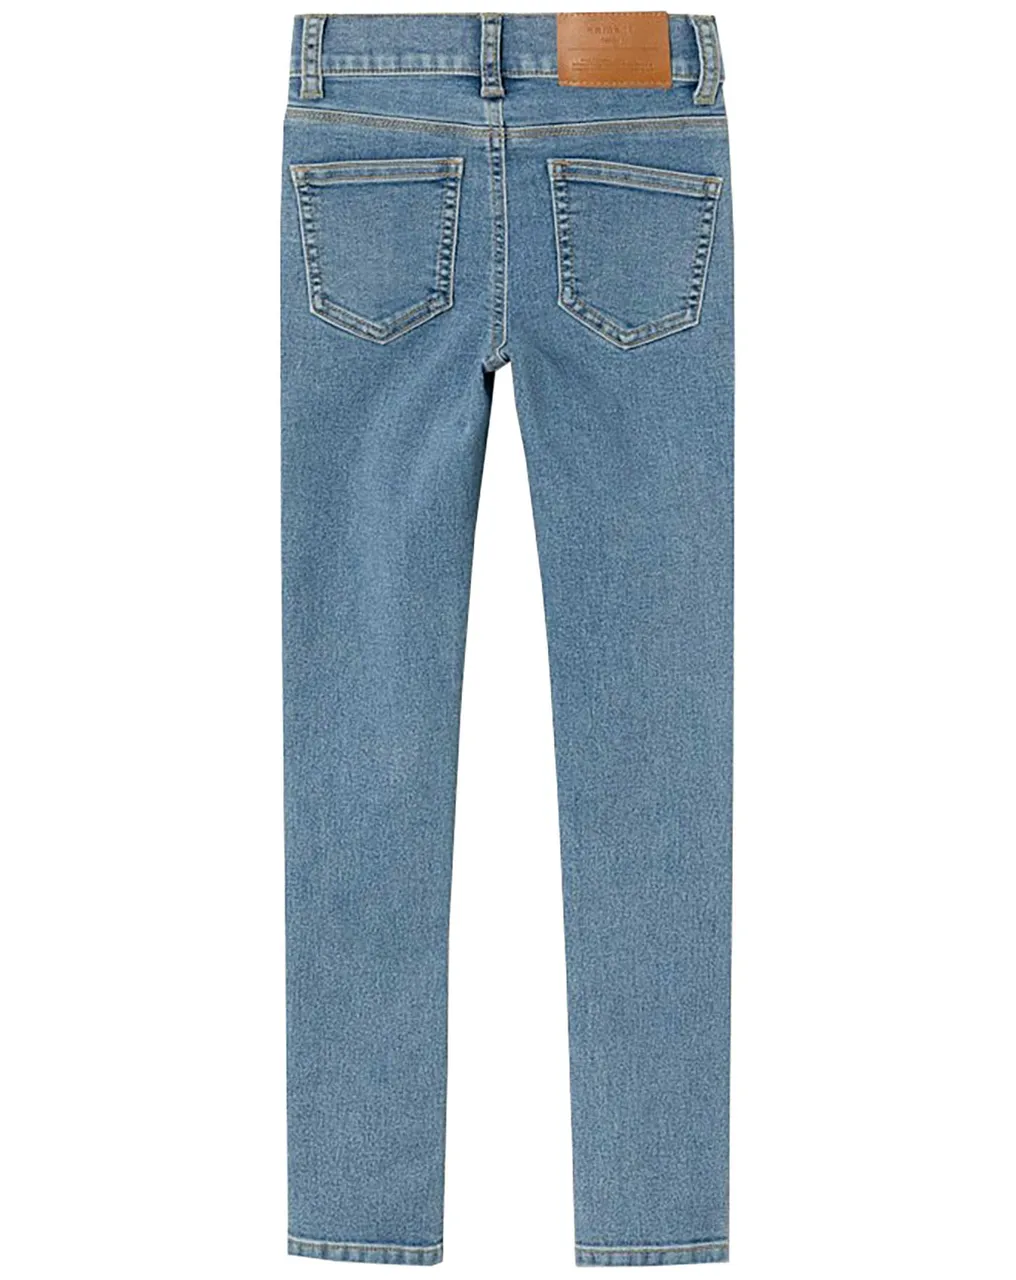 Jeans NKFPOLLY SKINNY 9630-IS in medium blue denim